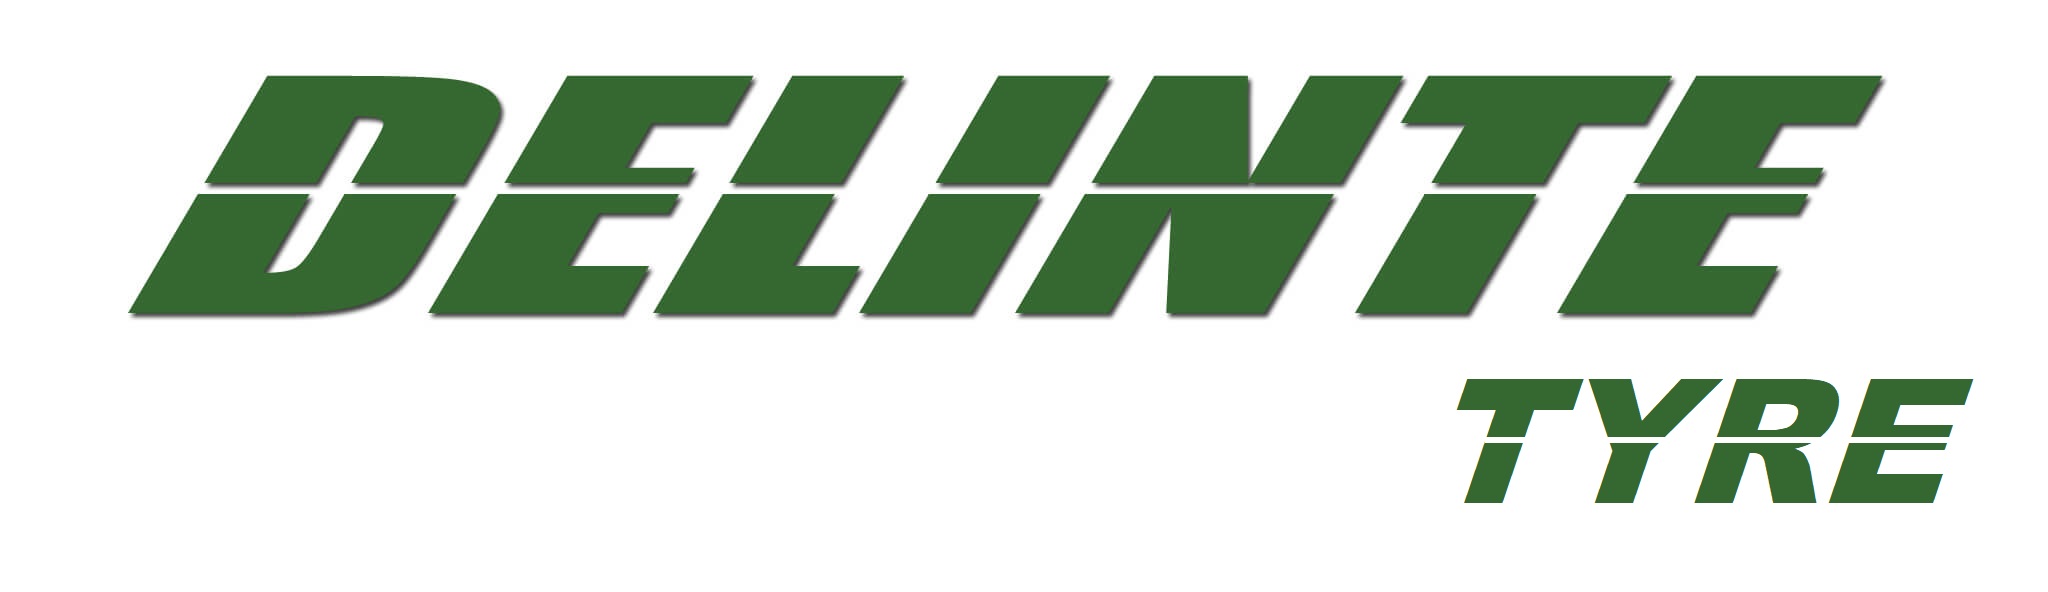 Delinte logo